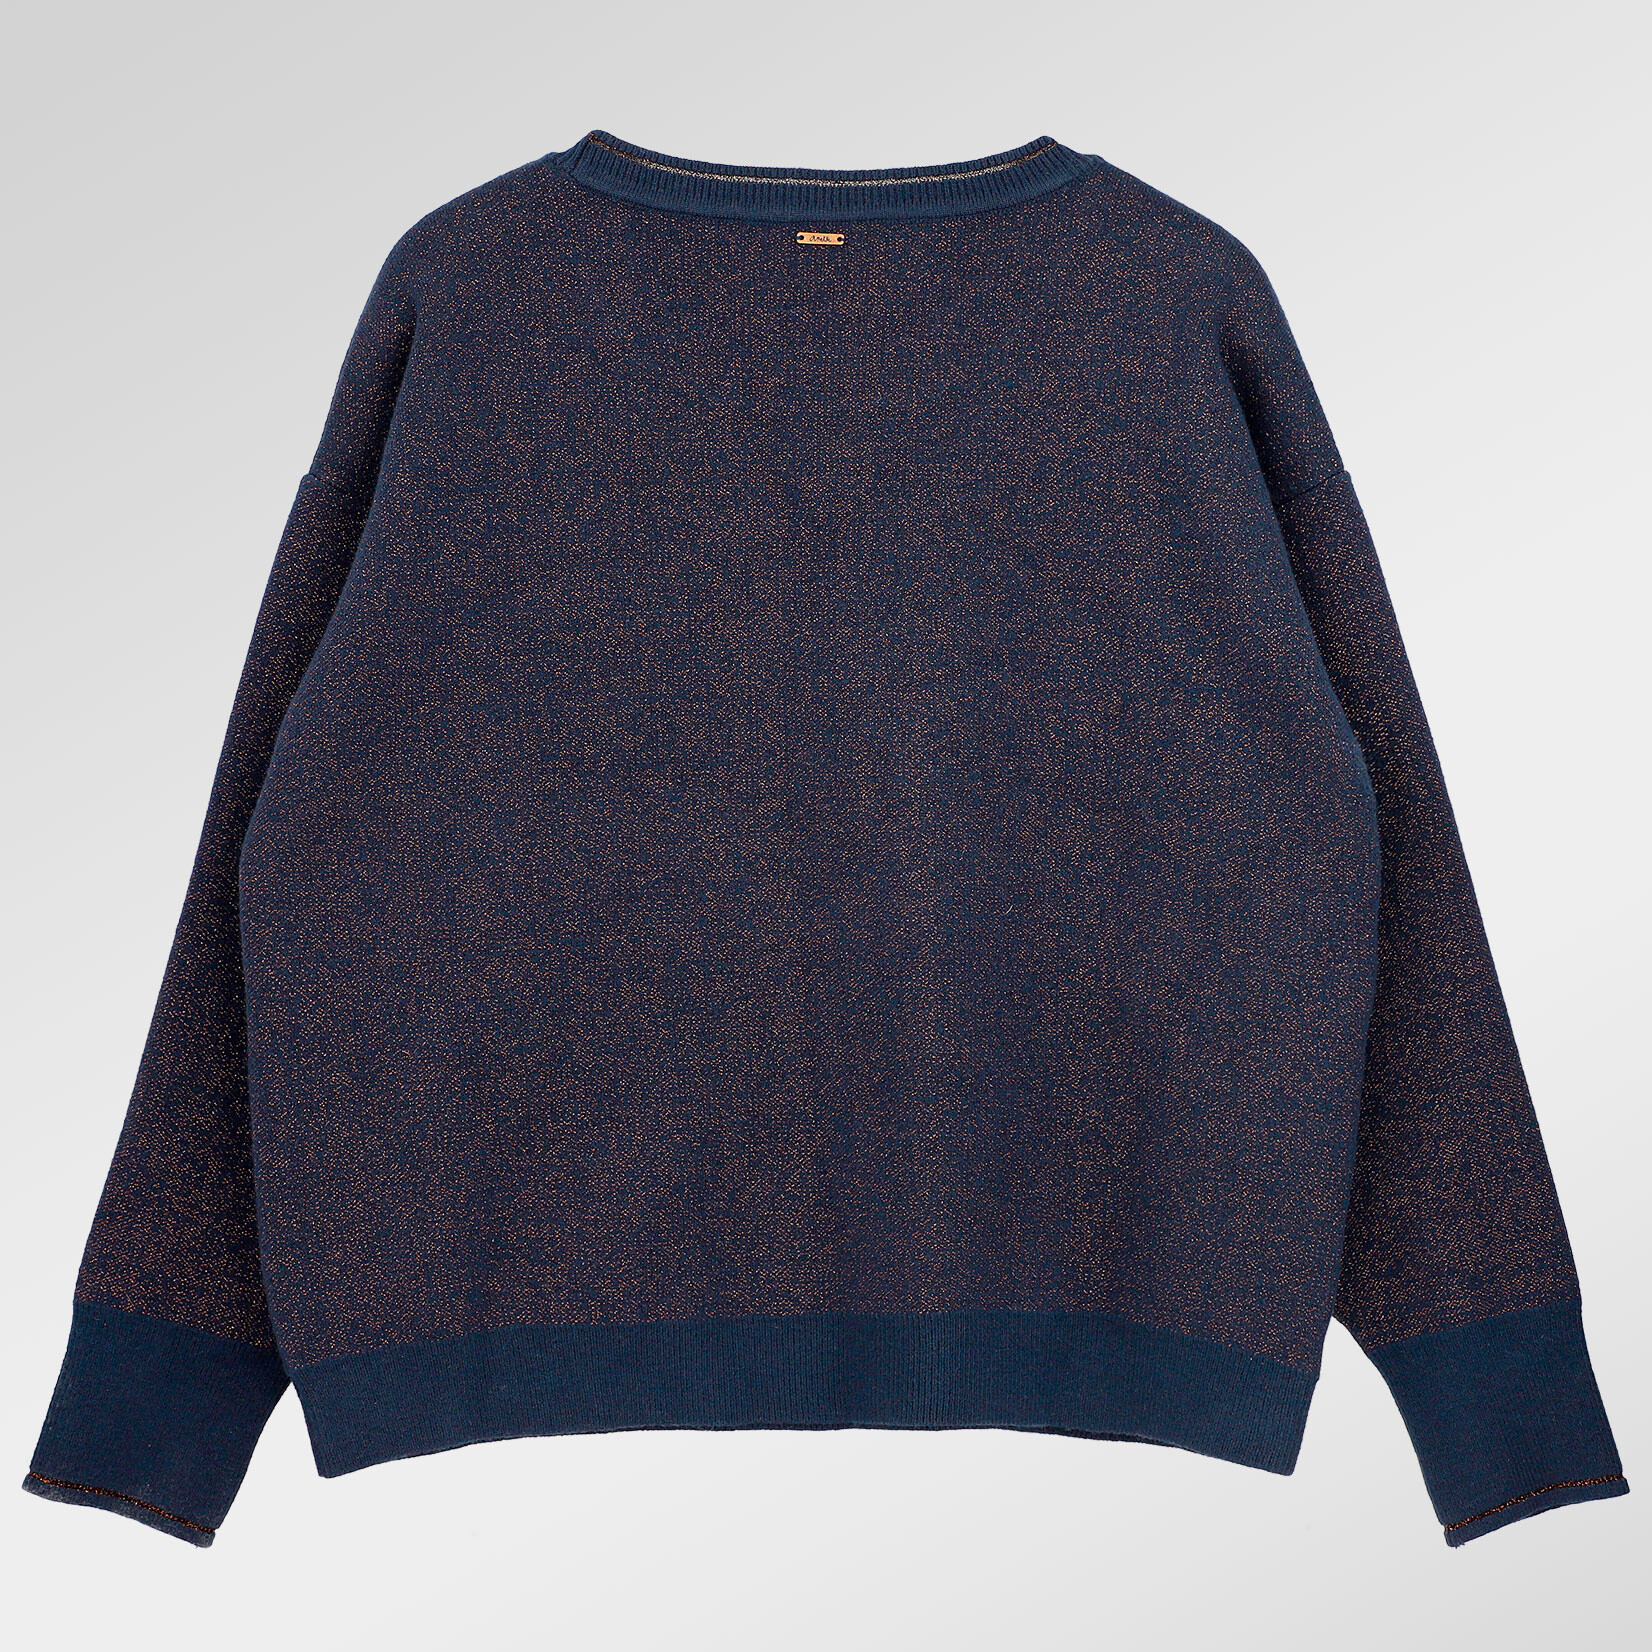 Anekke Contemporay L/XL Damen Sweater - Blau